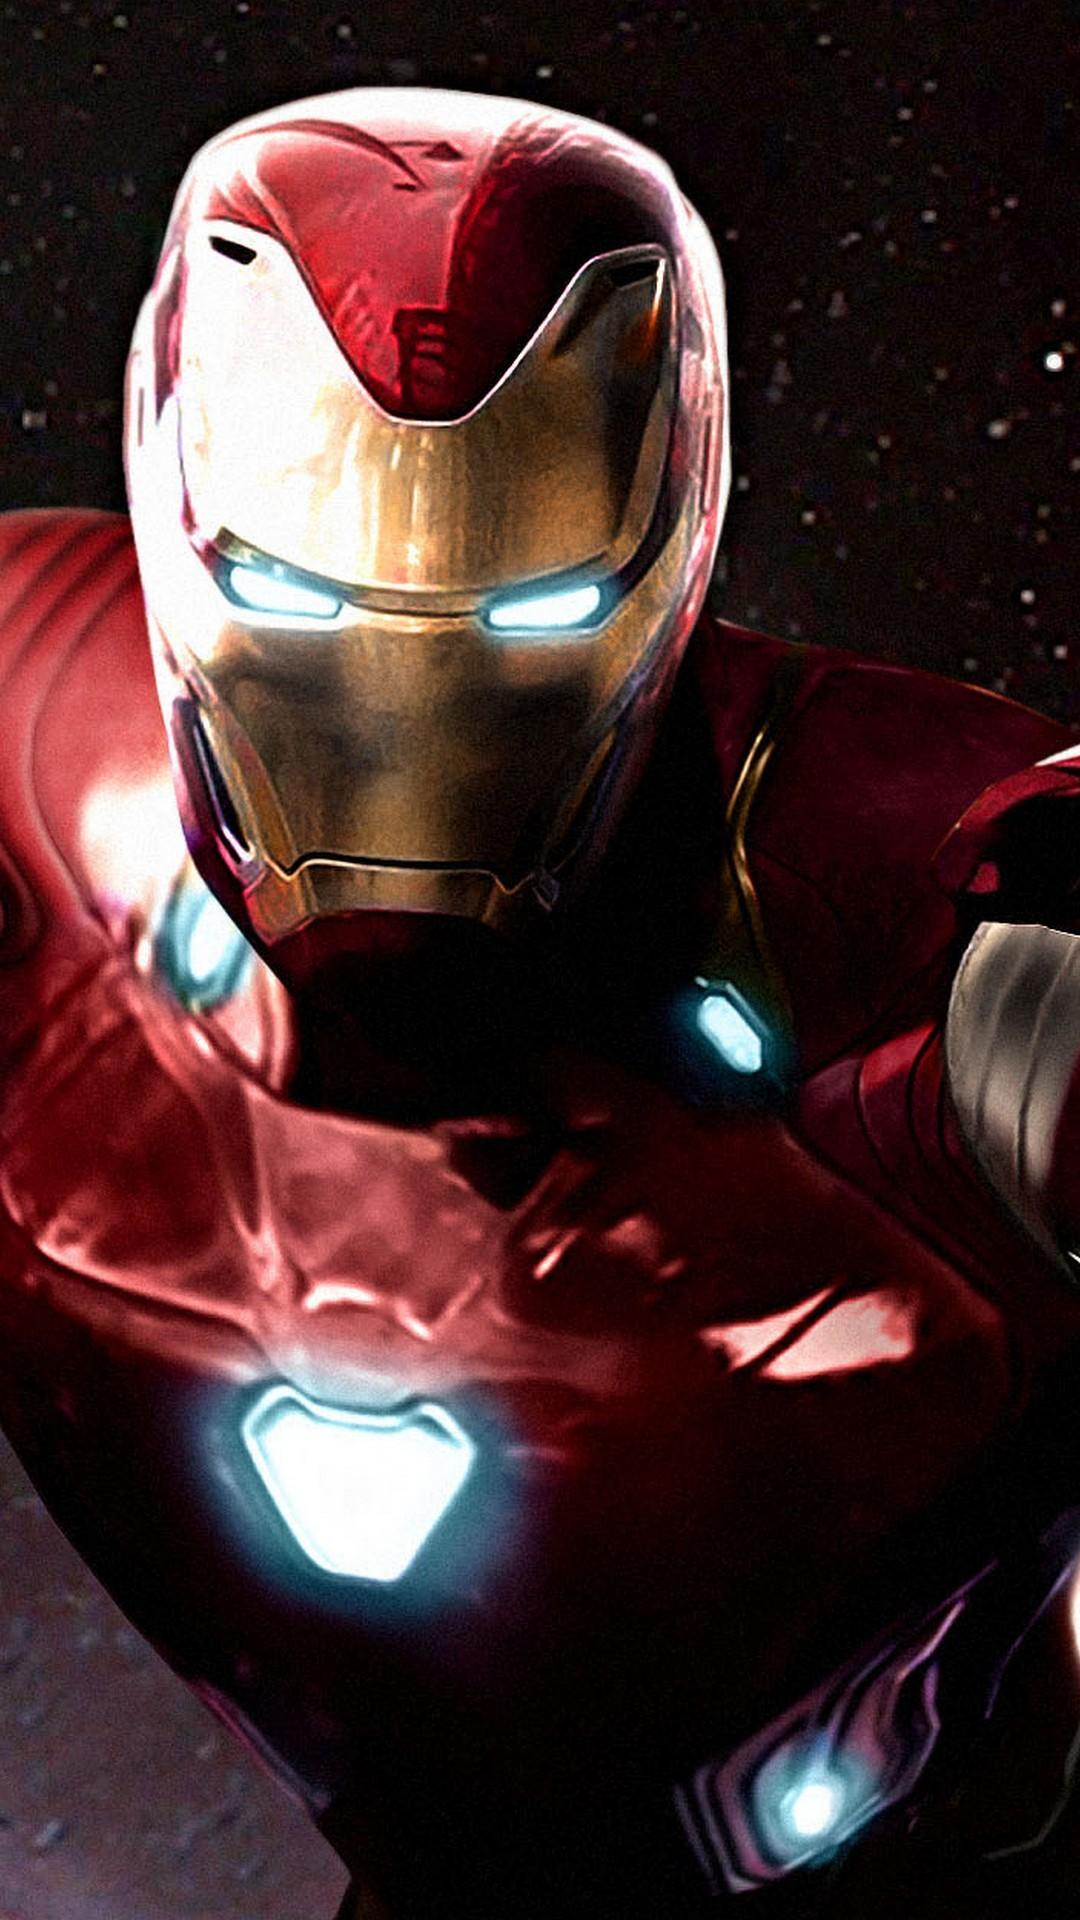 Iron Man Avengers Infinity War iPhone Wallpaper 3D